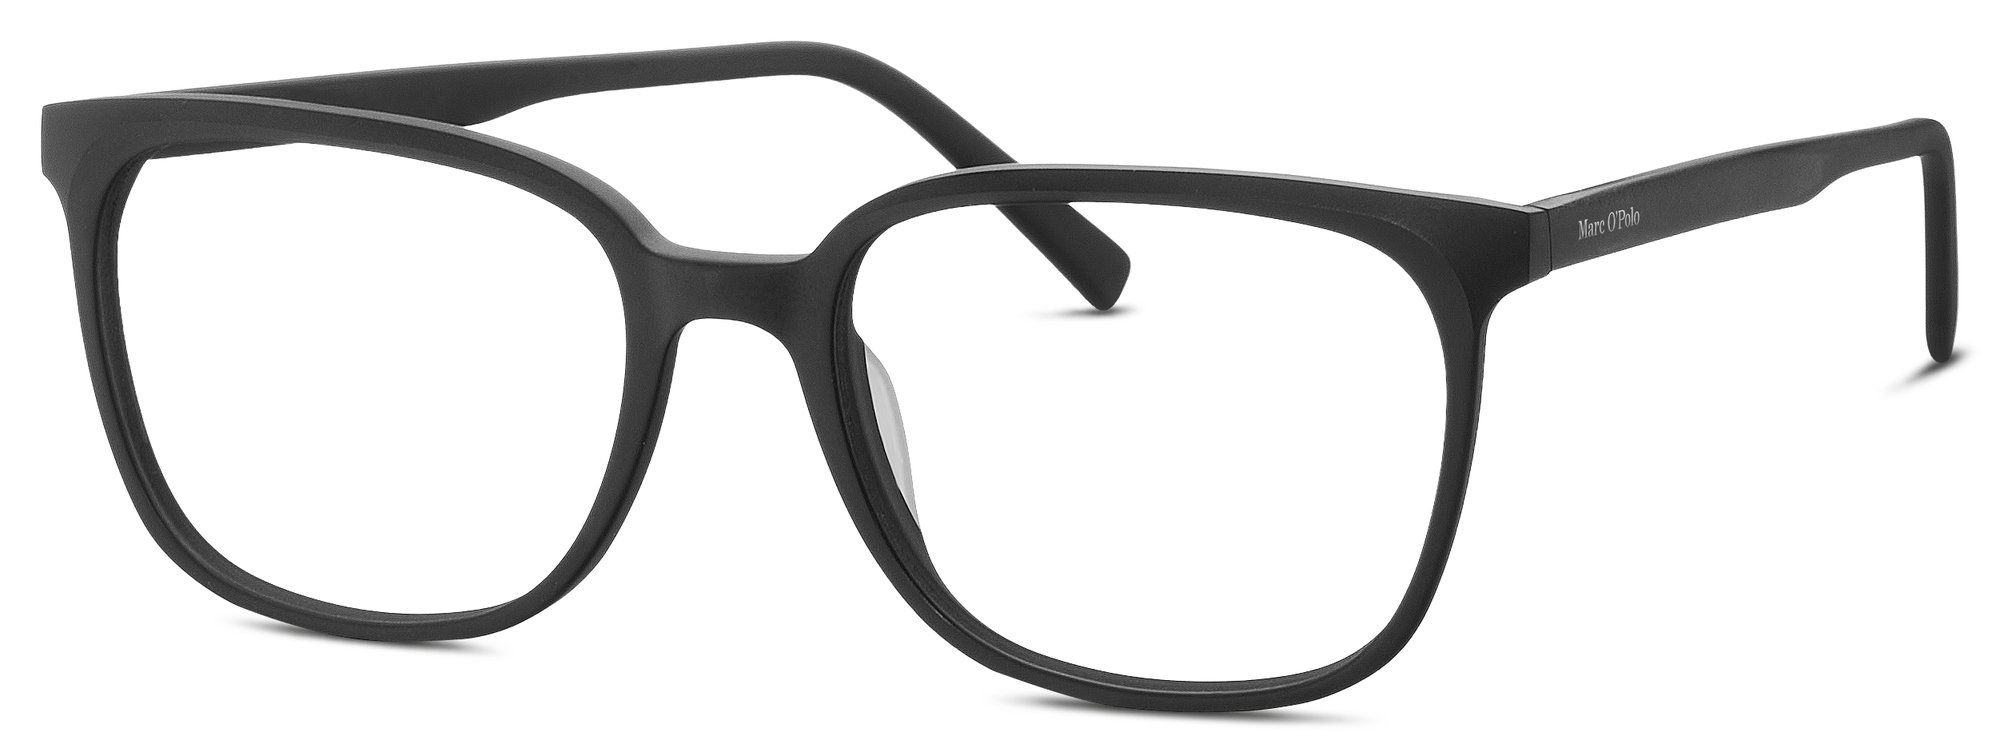 Das Bild zeigt die Korrektionsbrille 503188 10 von der Marke Marc O‘Polo in schwarz.